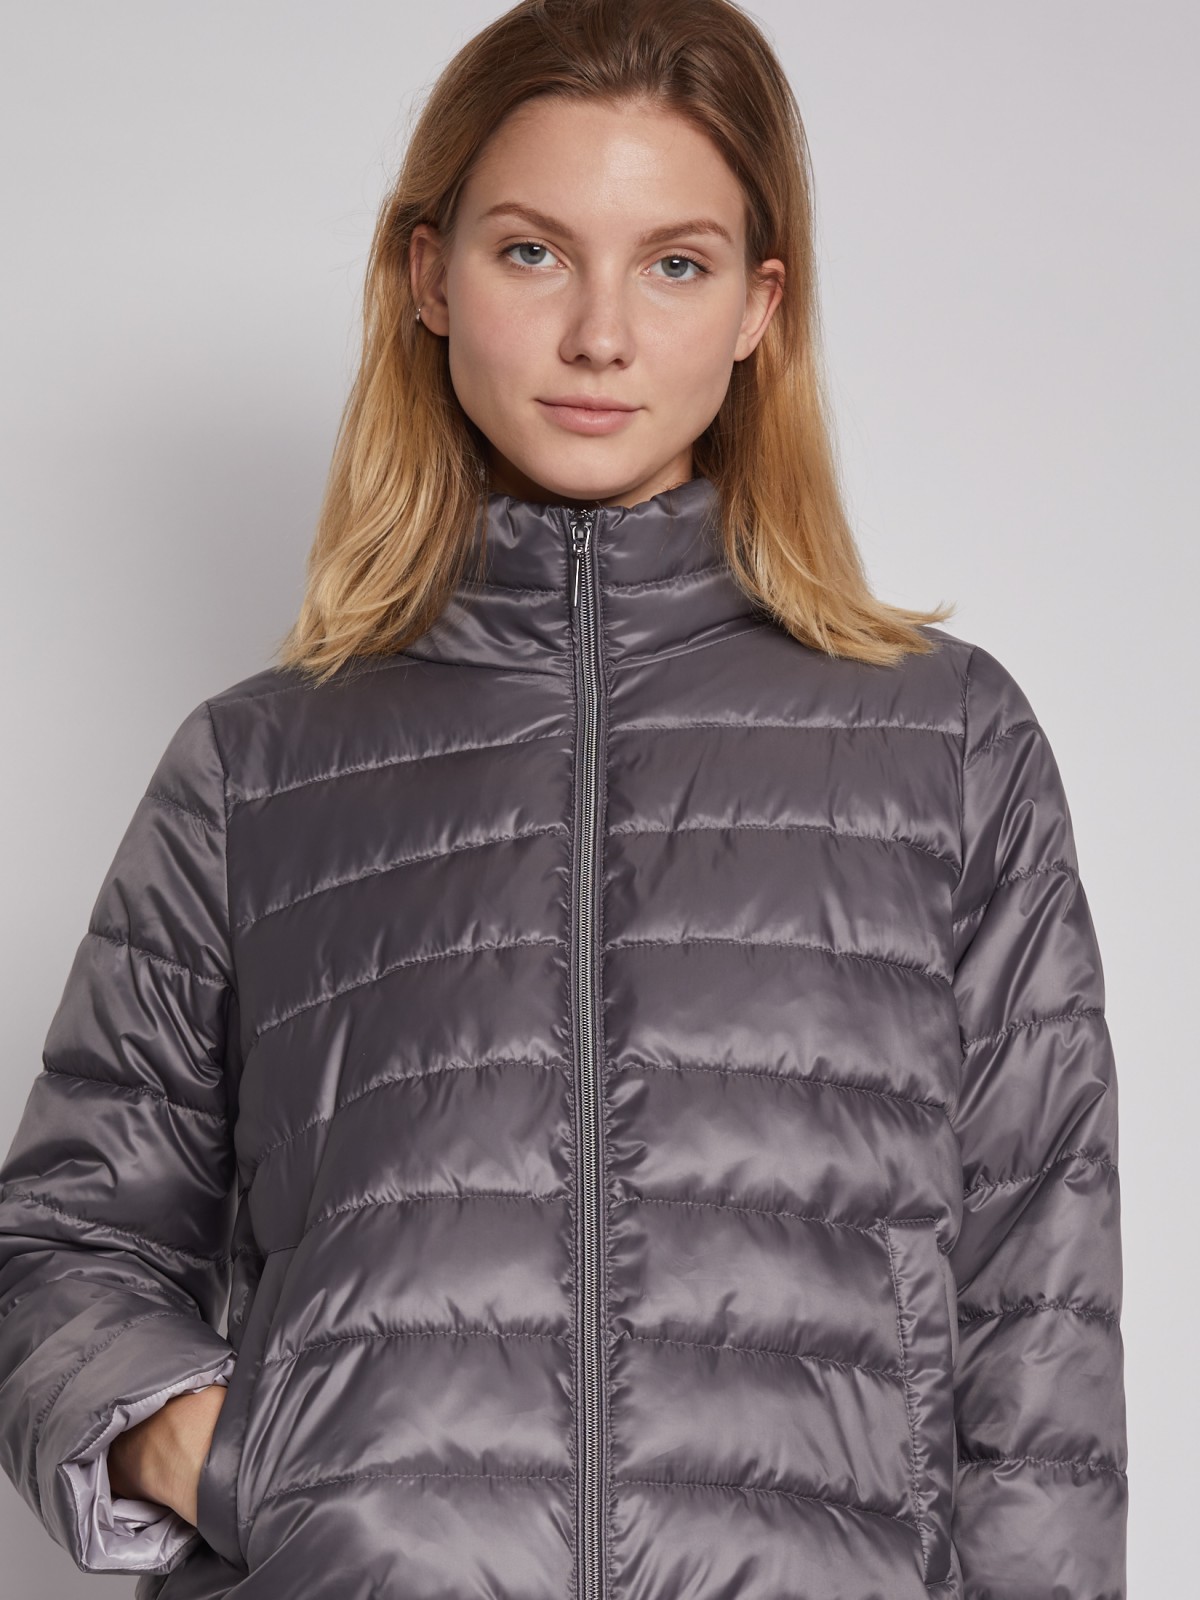 Лёгкая куртка с высоким воротником zolla 022125102234, цвет темно-серый, размер S - фото 4